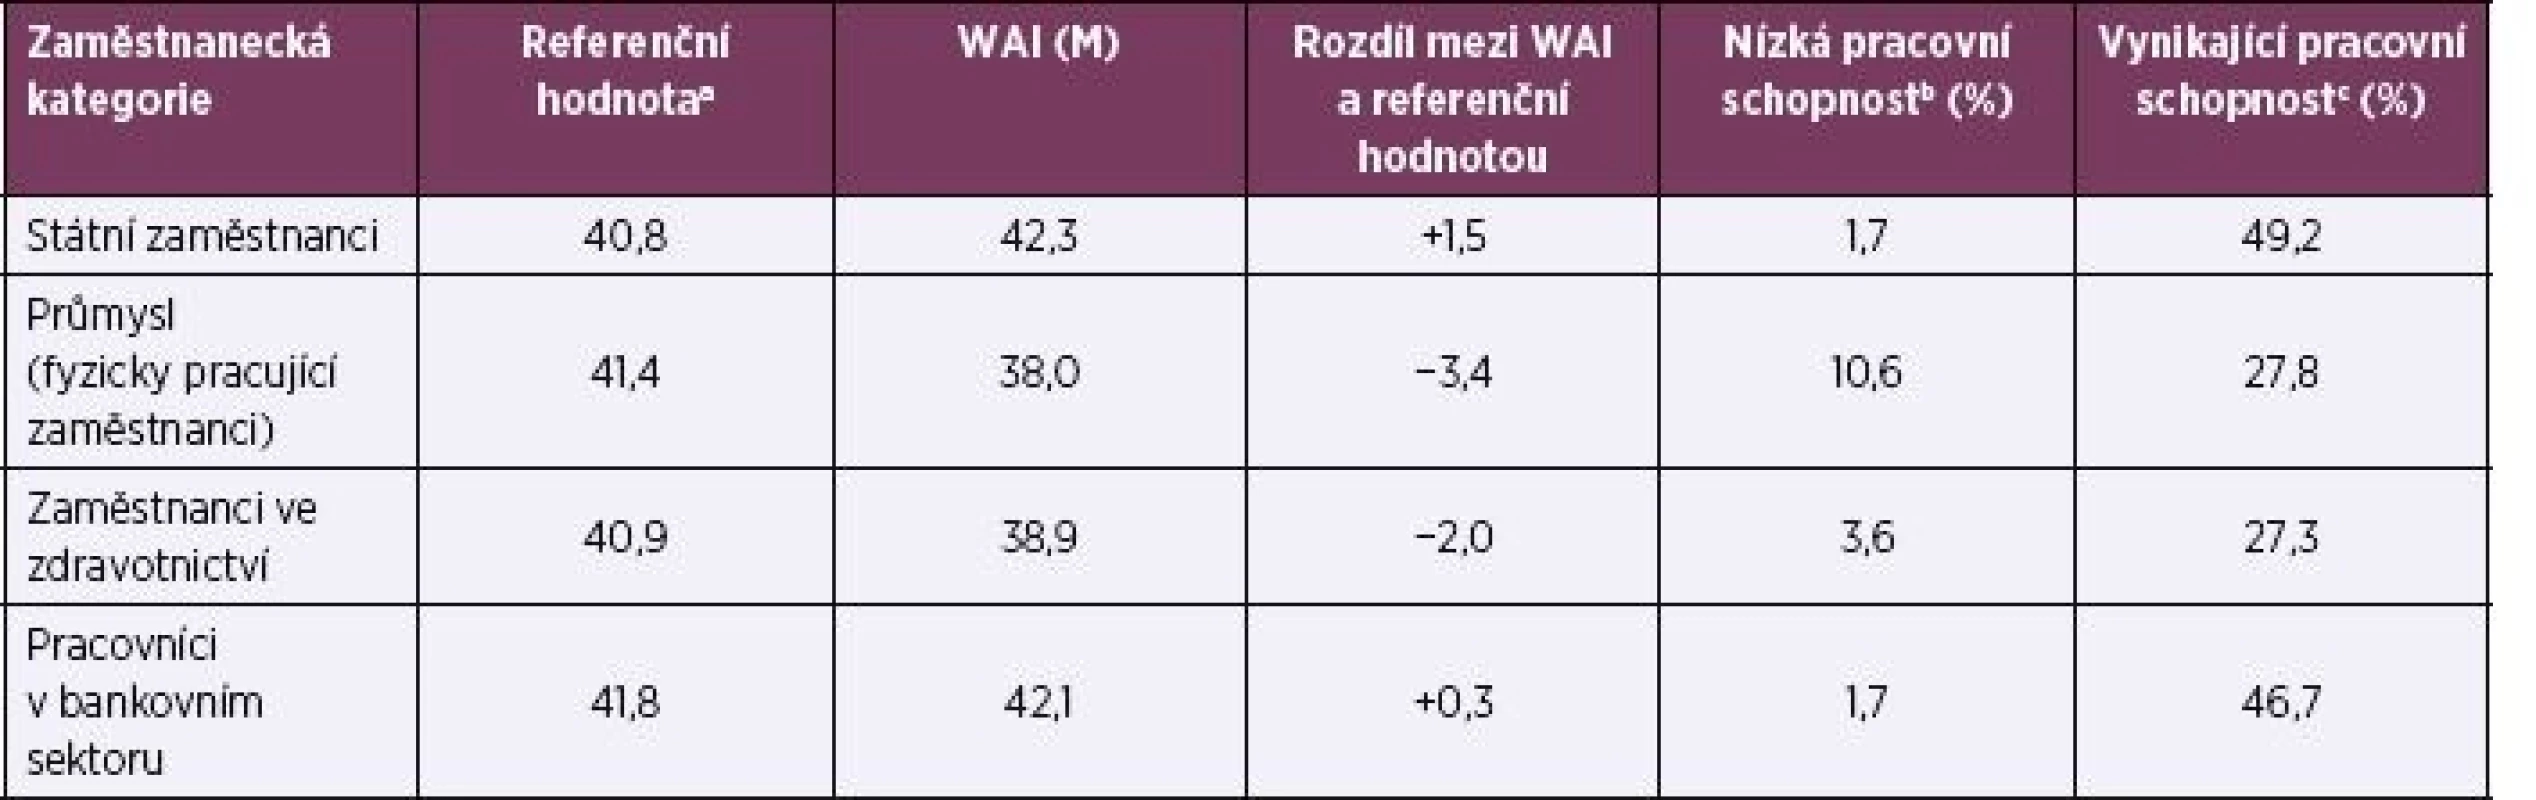 Referenční hodnoty a WAI podle zaměstnaneckých kategorií